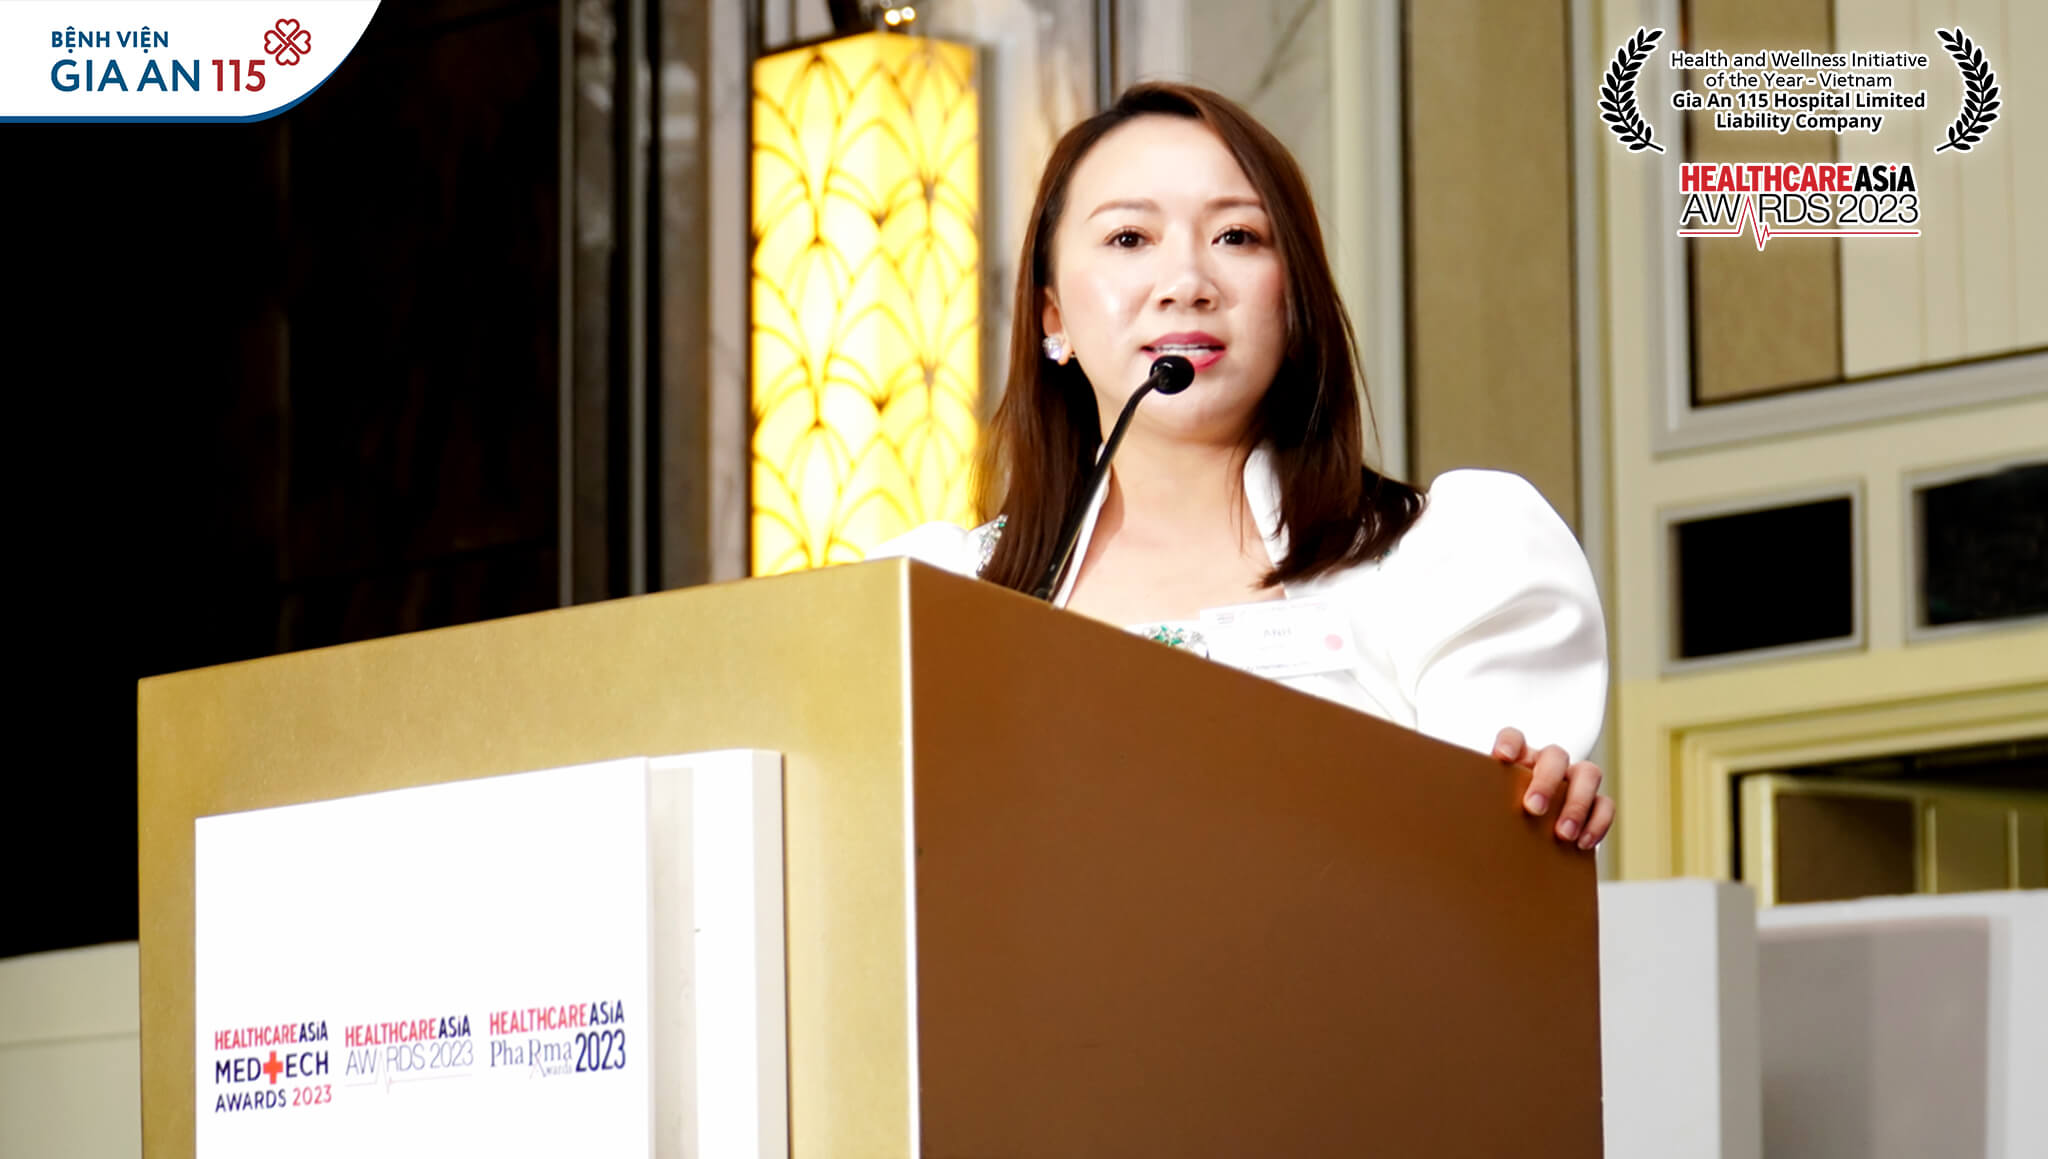 Bà Dương Bảo Anh, đại diện Nhà đầu tư Tập đoàn Y tế Hoa Lâm - Shangri-la tại buổi trao giải Healthcare Asia Award năm 2023